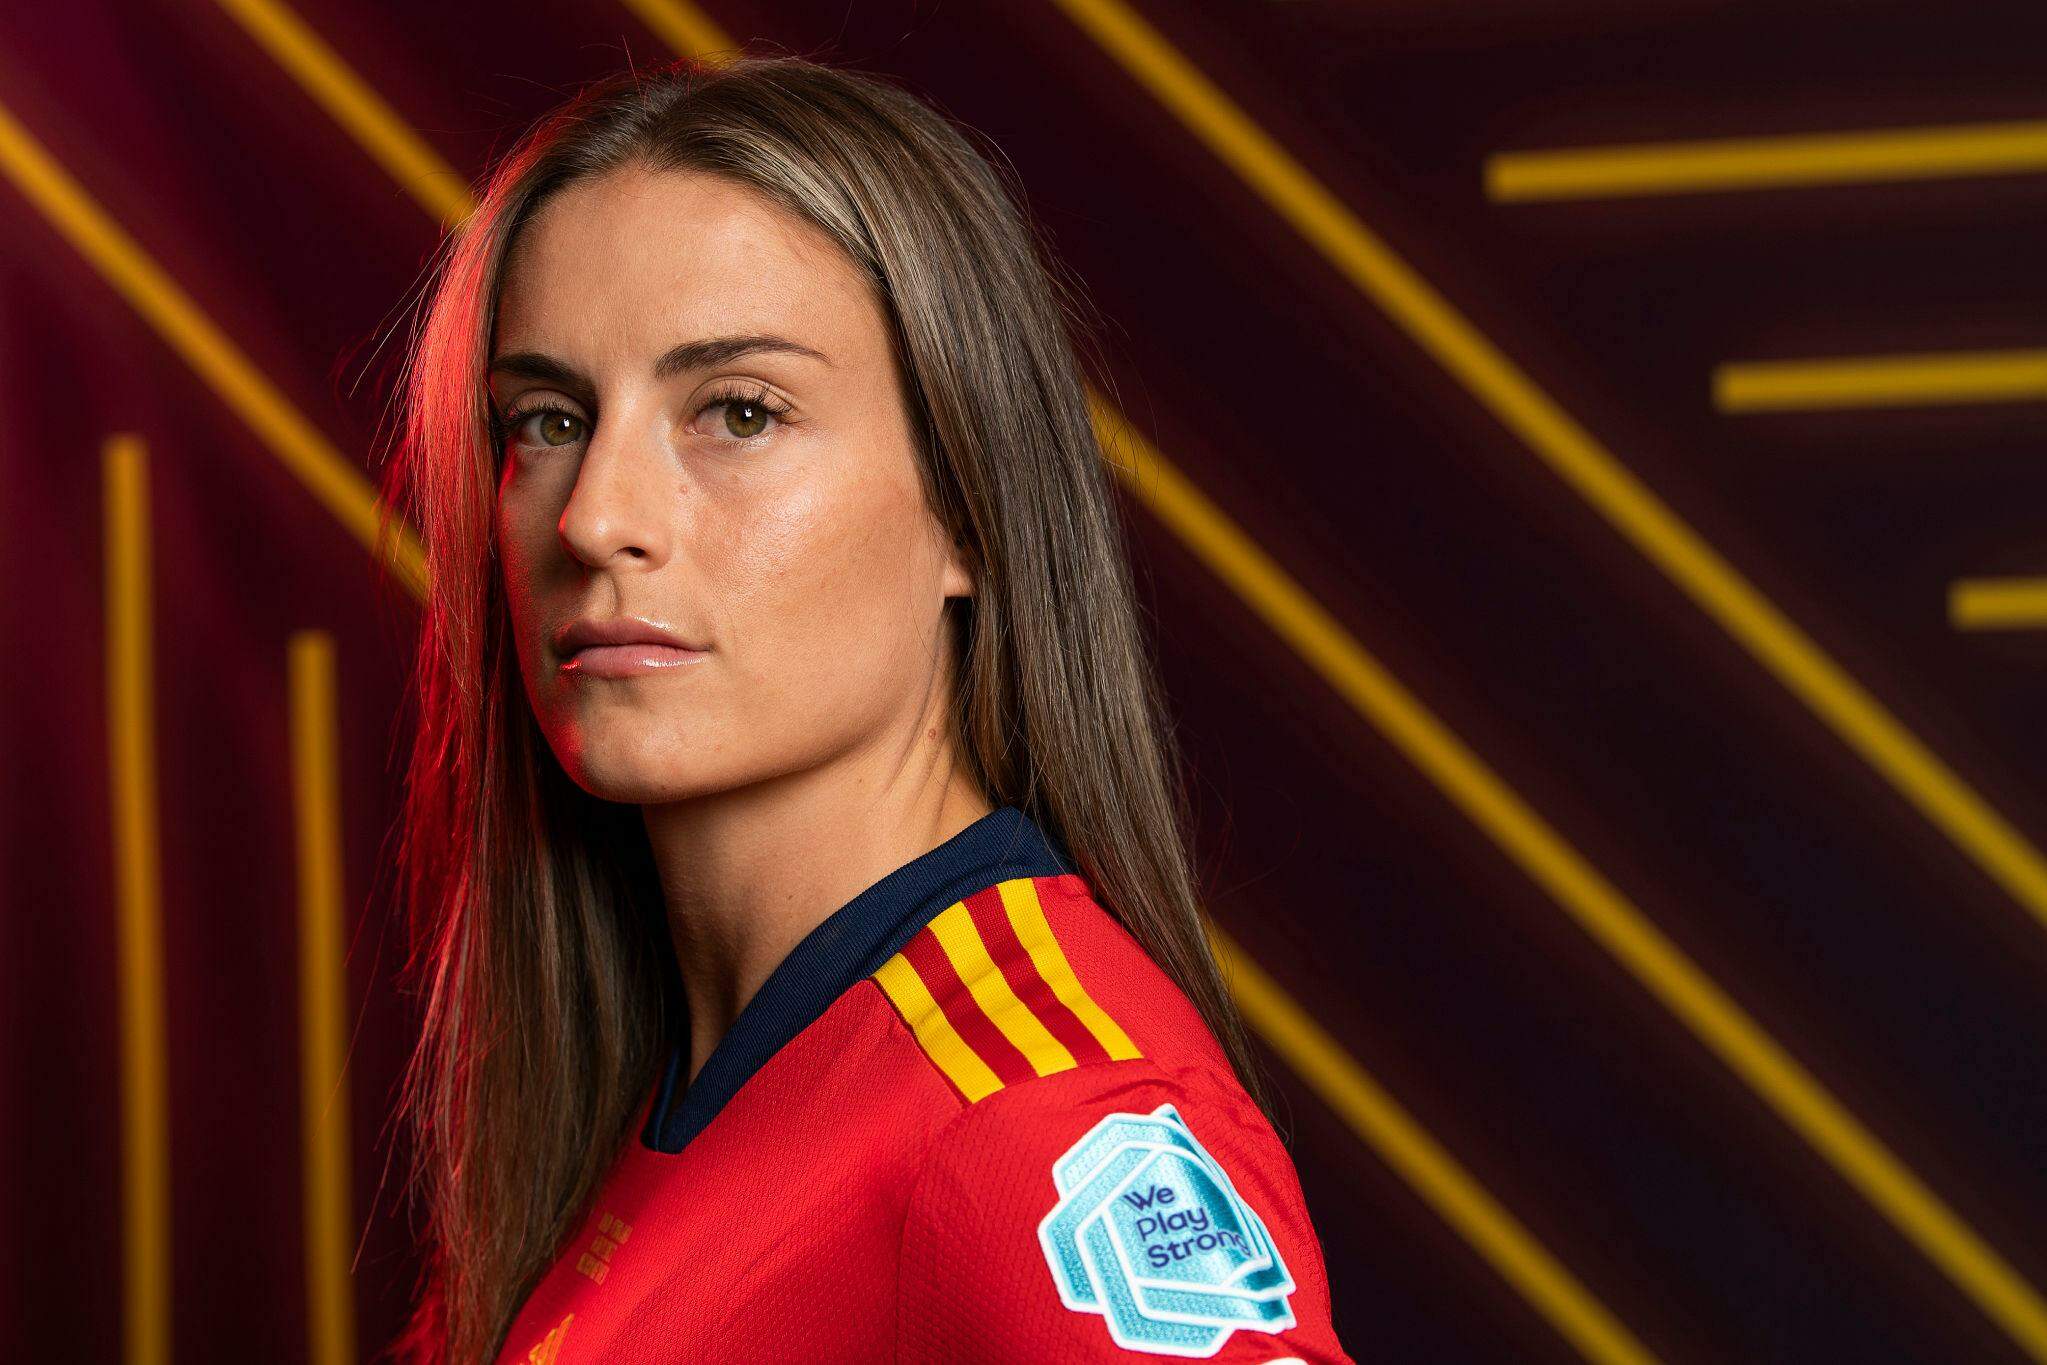 Como Alexia Putellas, jogadora da seleção espanhola, se tornou uma